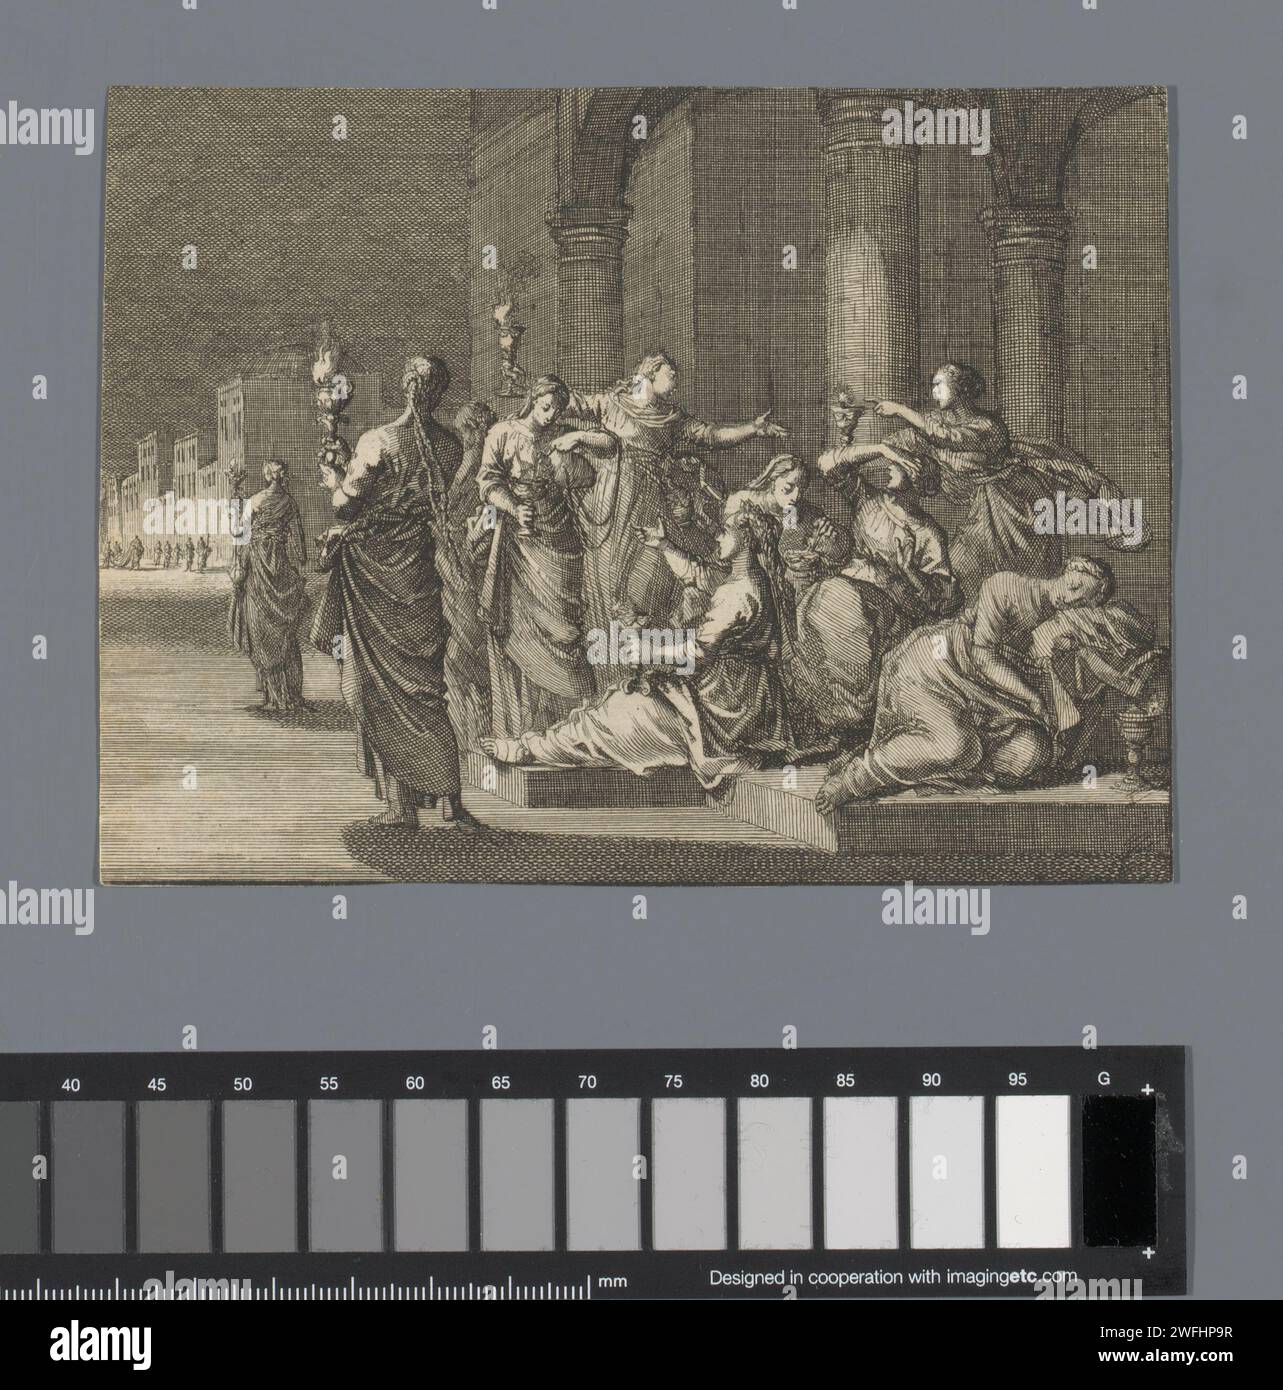 Die fünf weisen und törichten Jungfrauen, Jan Luyken, 1659 - 1712 Druckpapier, das die weisen und törichten Jungfrauen ätzt  Gleichnis von Christus (Matthäus 25,1-13) Stockfoto